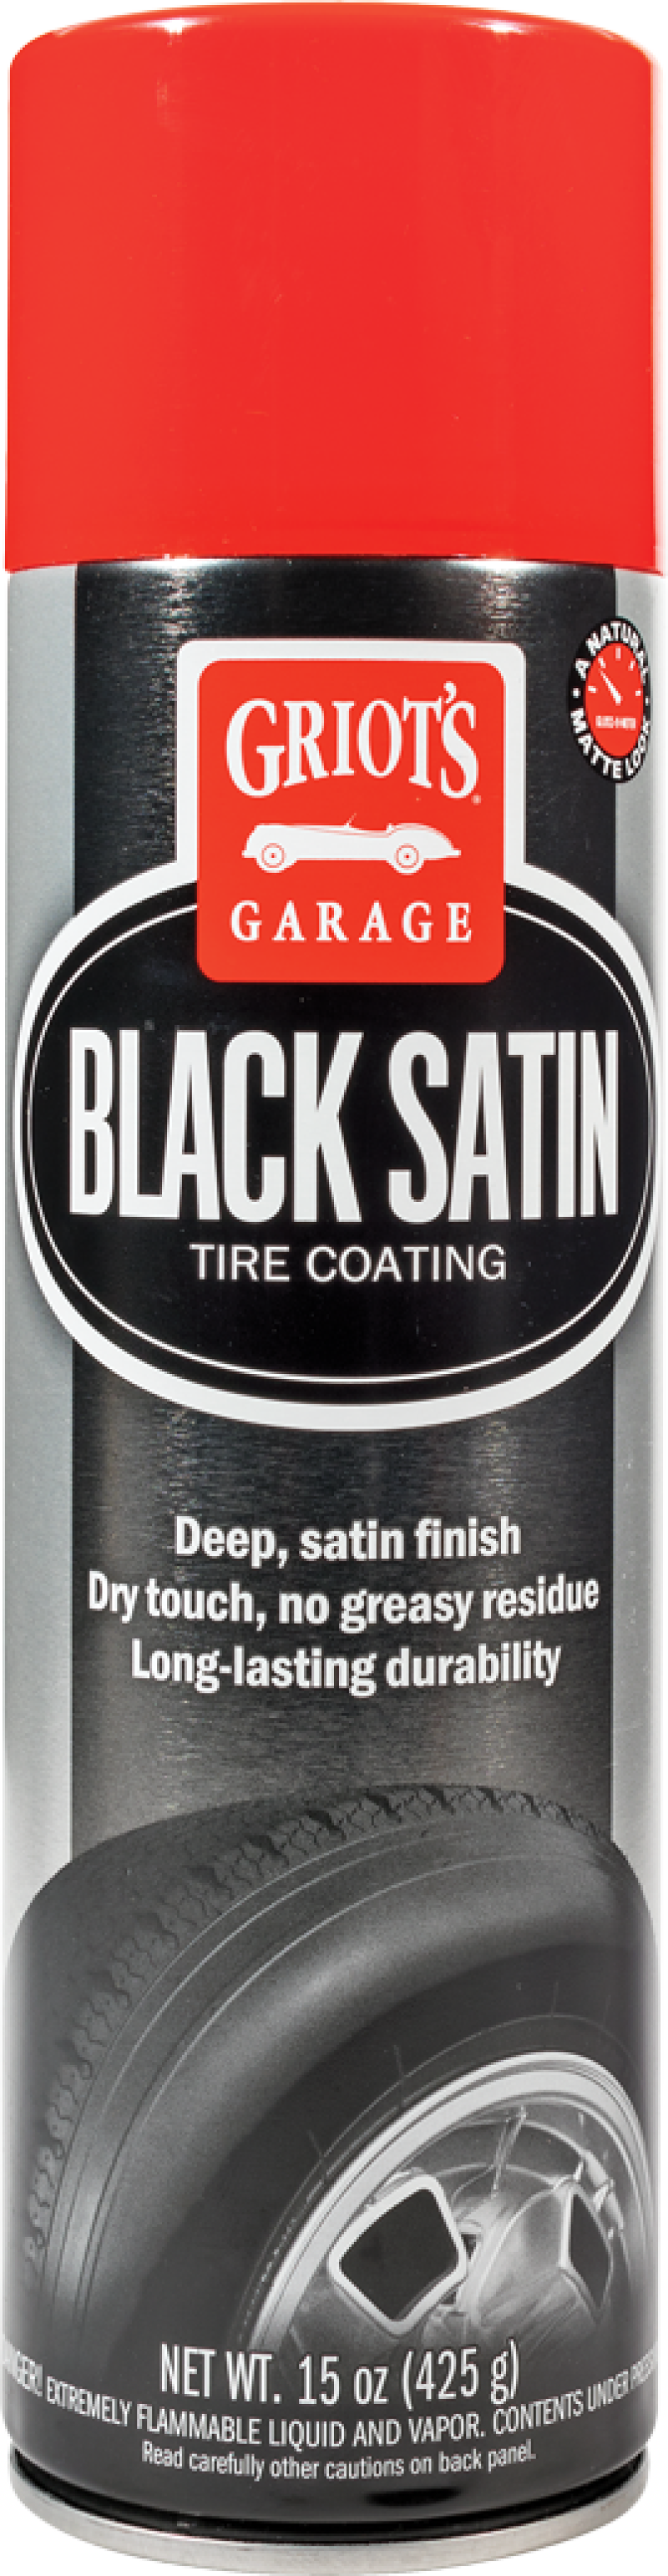 GRIOT'S GARAGE Black Satin Tire Coating - 15oz - Case of 12